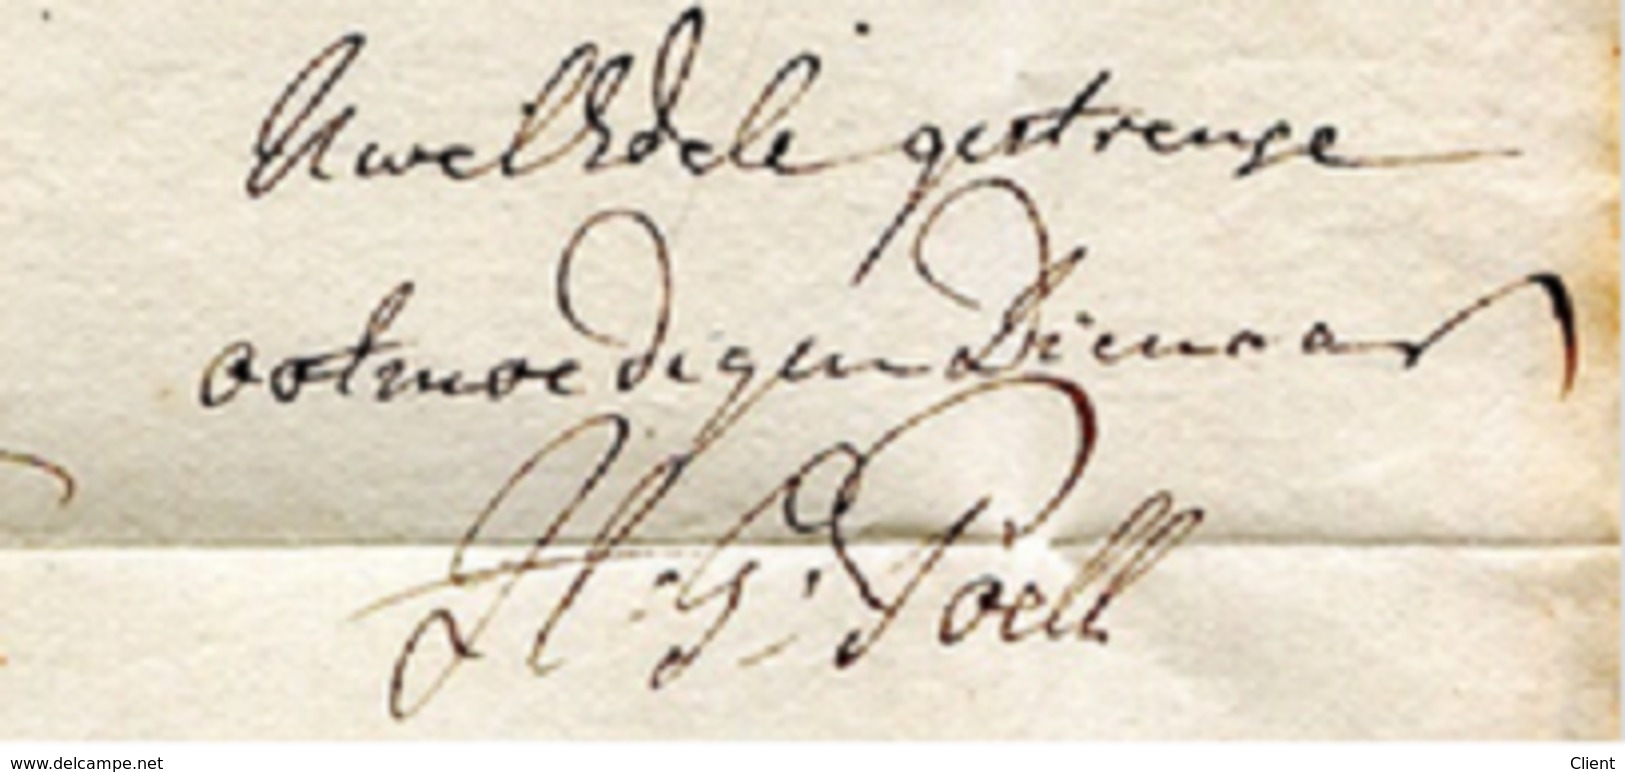 PAYS-BAS - Brief nach Burmond 1794 - von G. Poell für den Edelmann A. Michiels